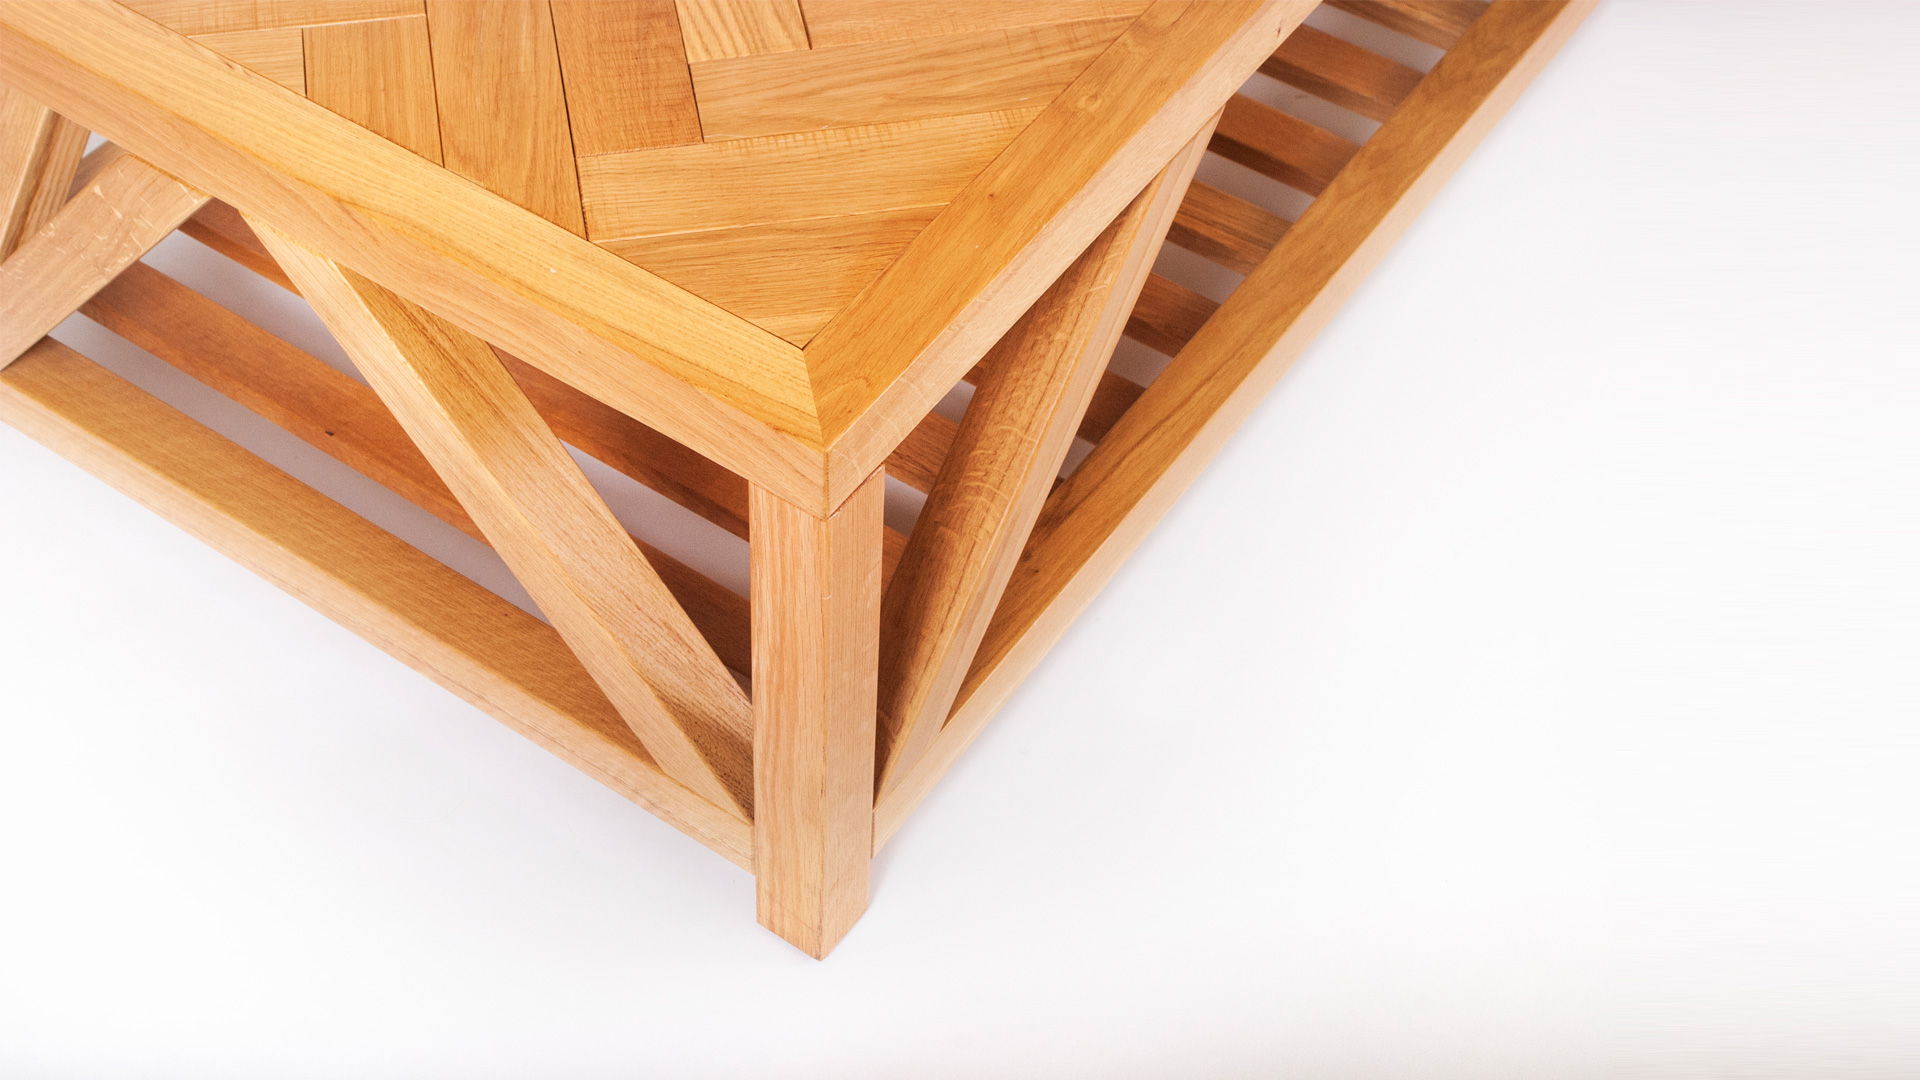 שולחן עץ אלון מלא משלב לוחות עץ בצורת פישבון